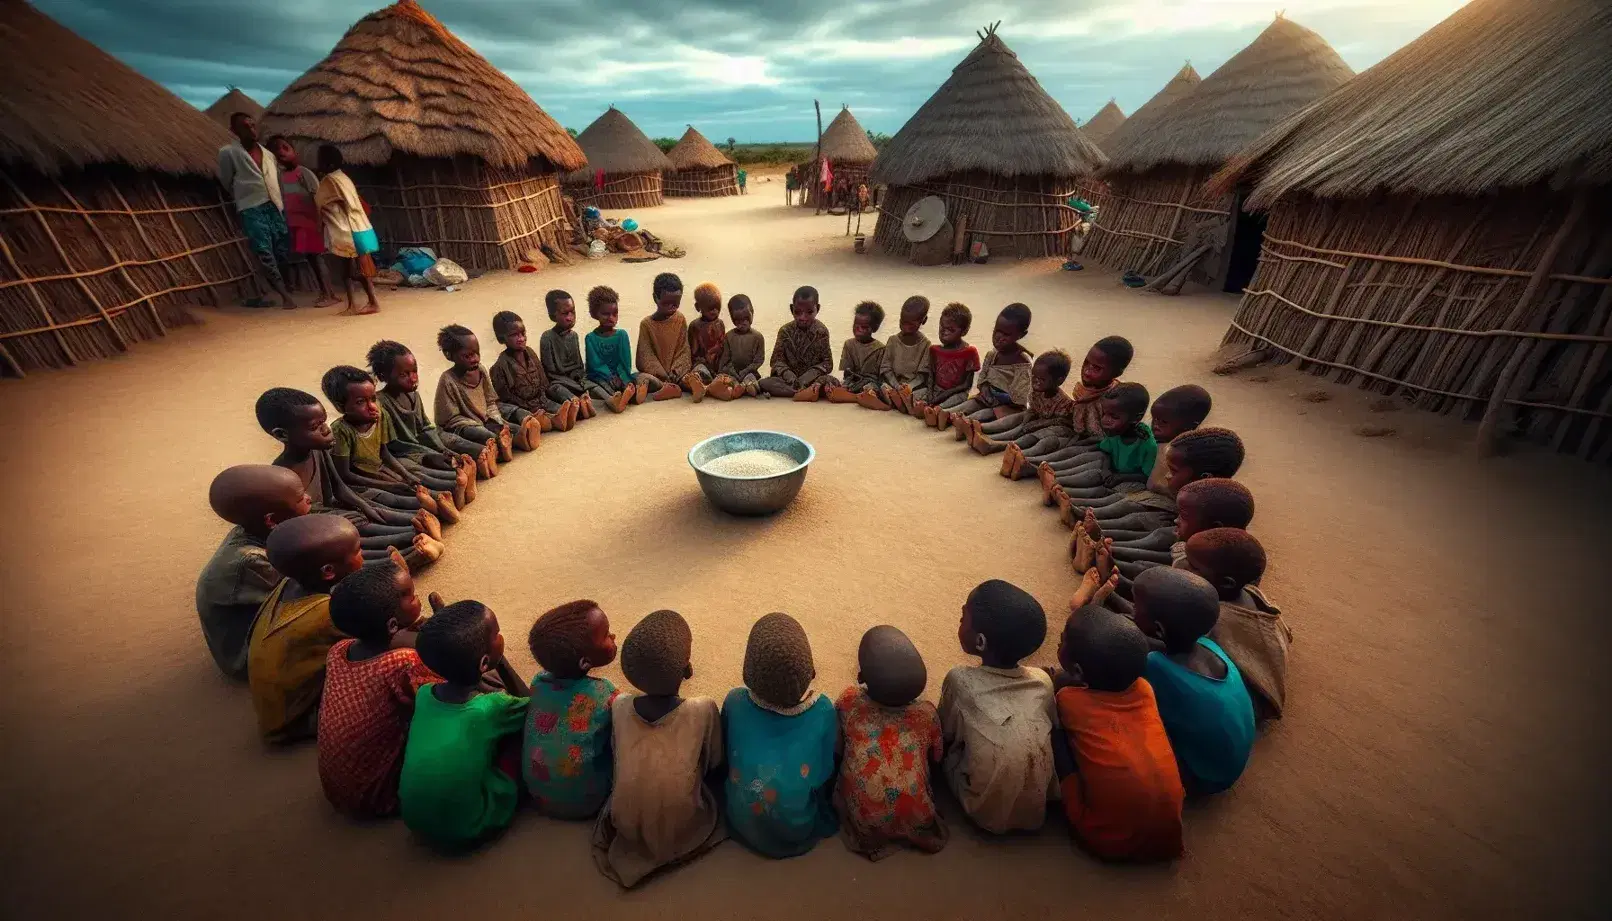 Bambini seduti in cerchio su strada polverosa di un villaggio, attendono porzioni di riso da una ciotola metallica al centro.